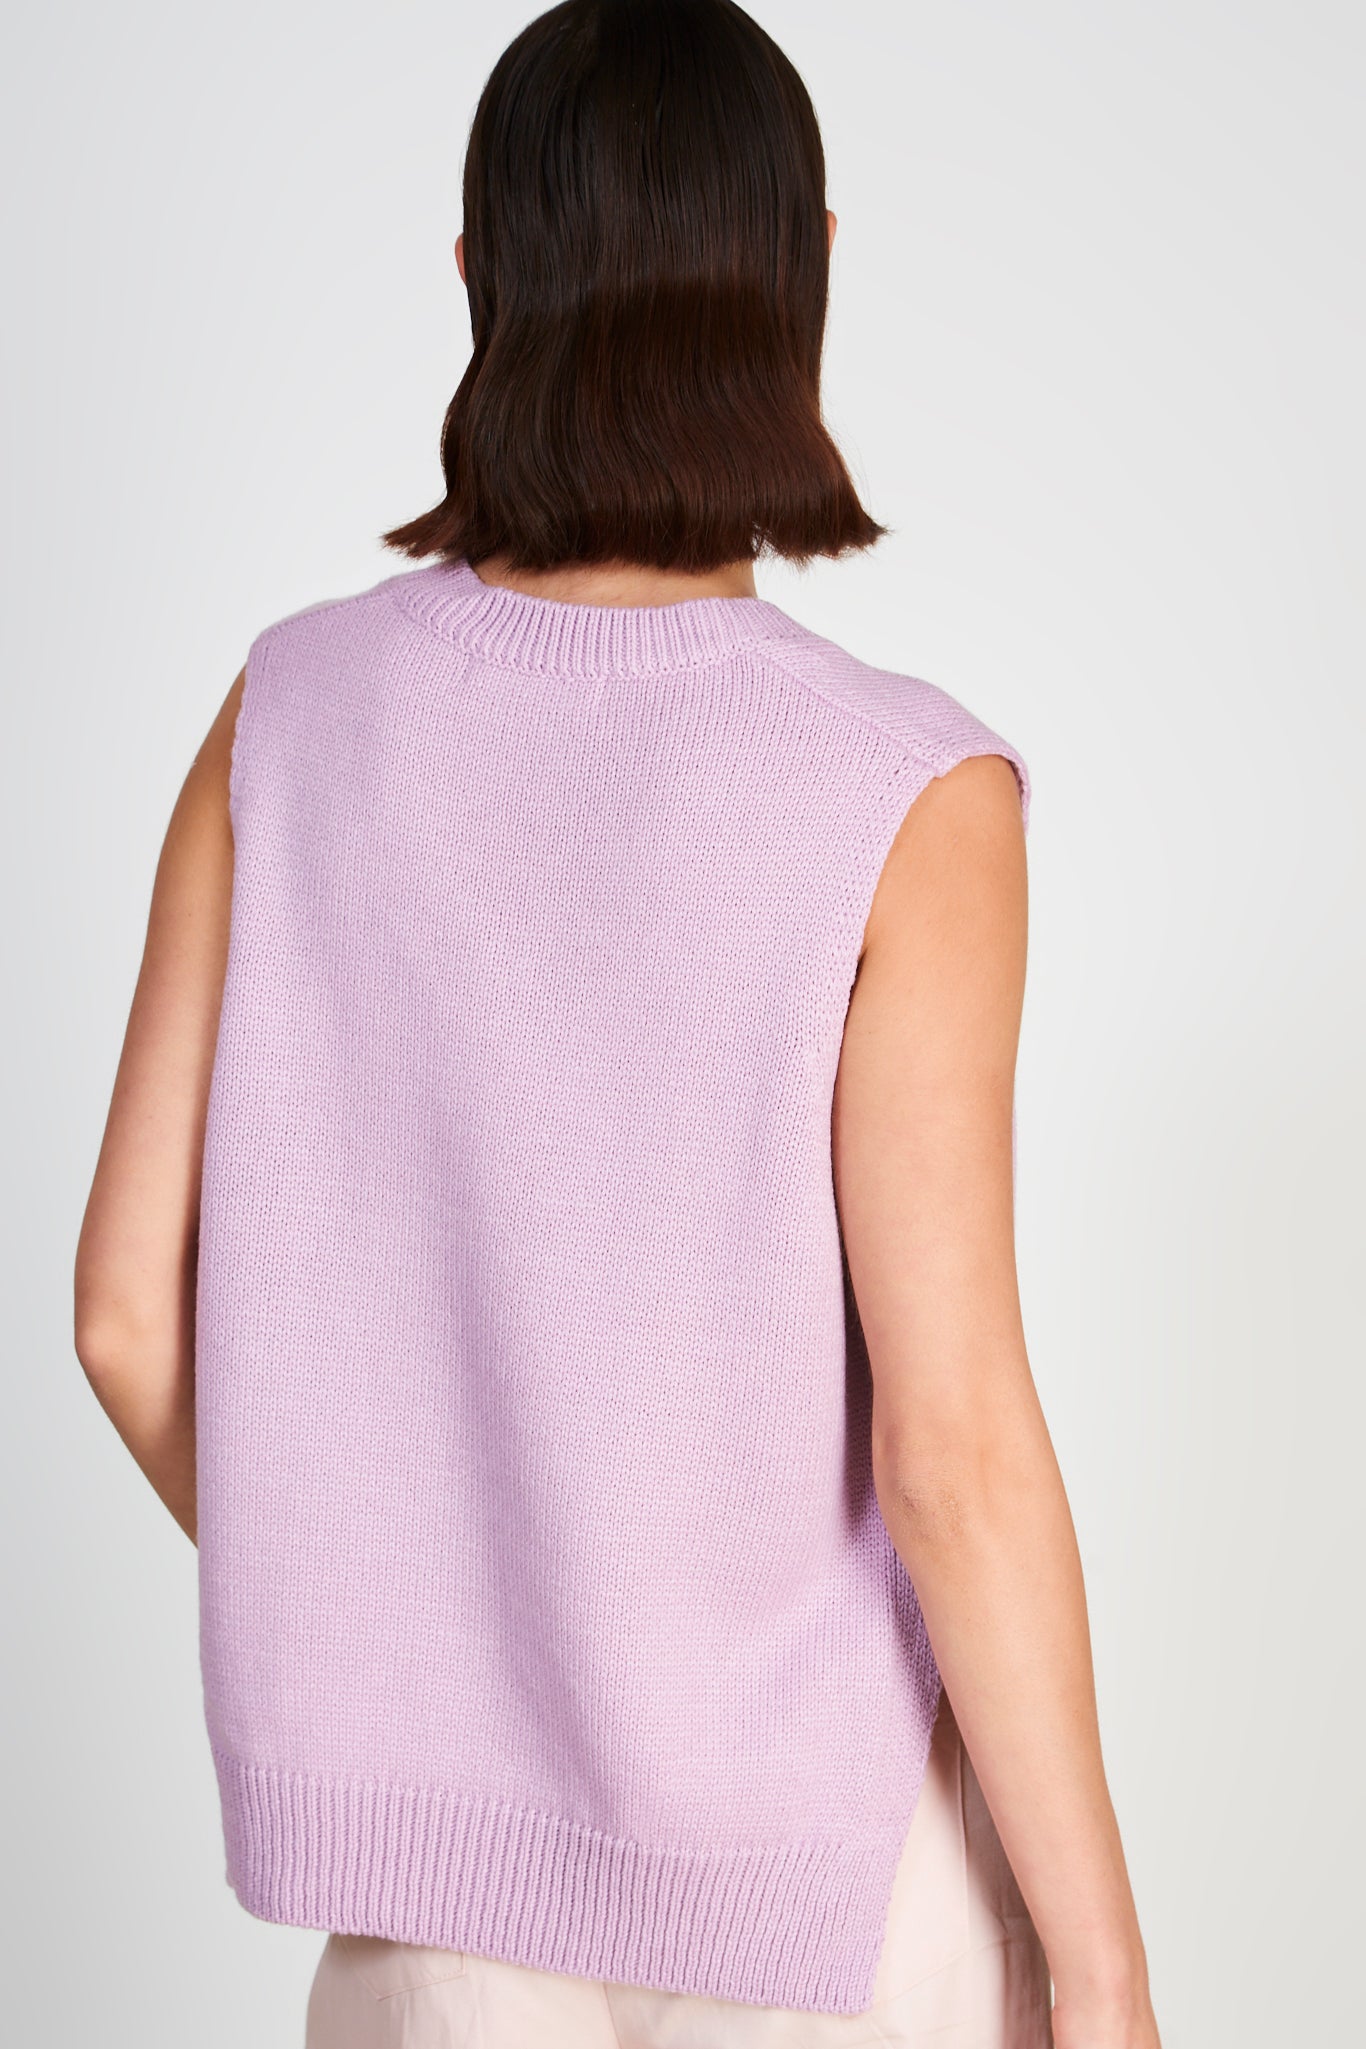 Lilac V neck sweater vest